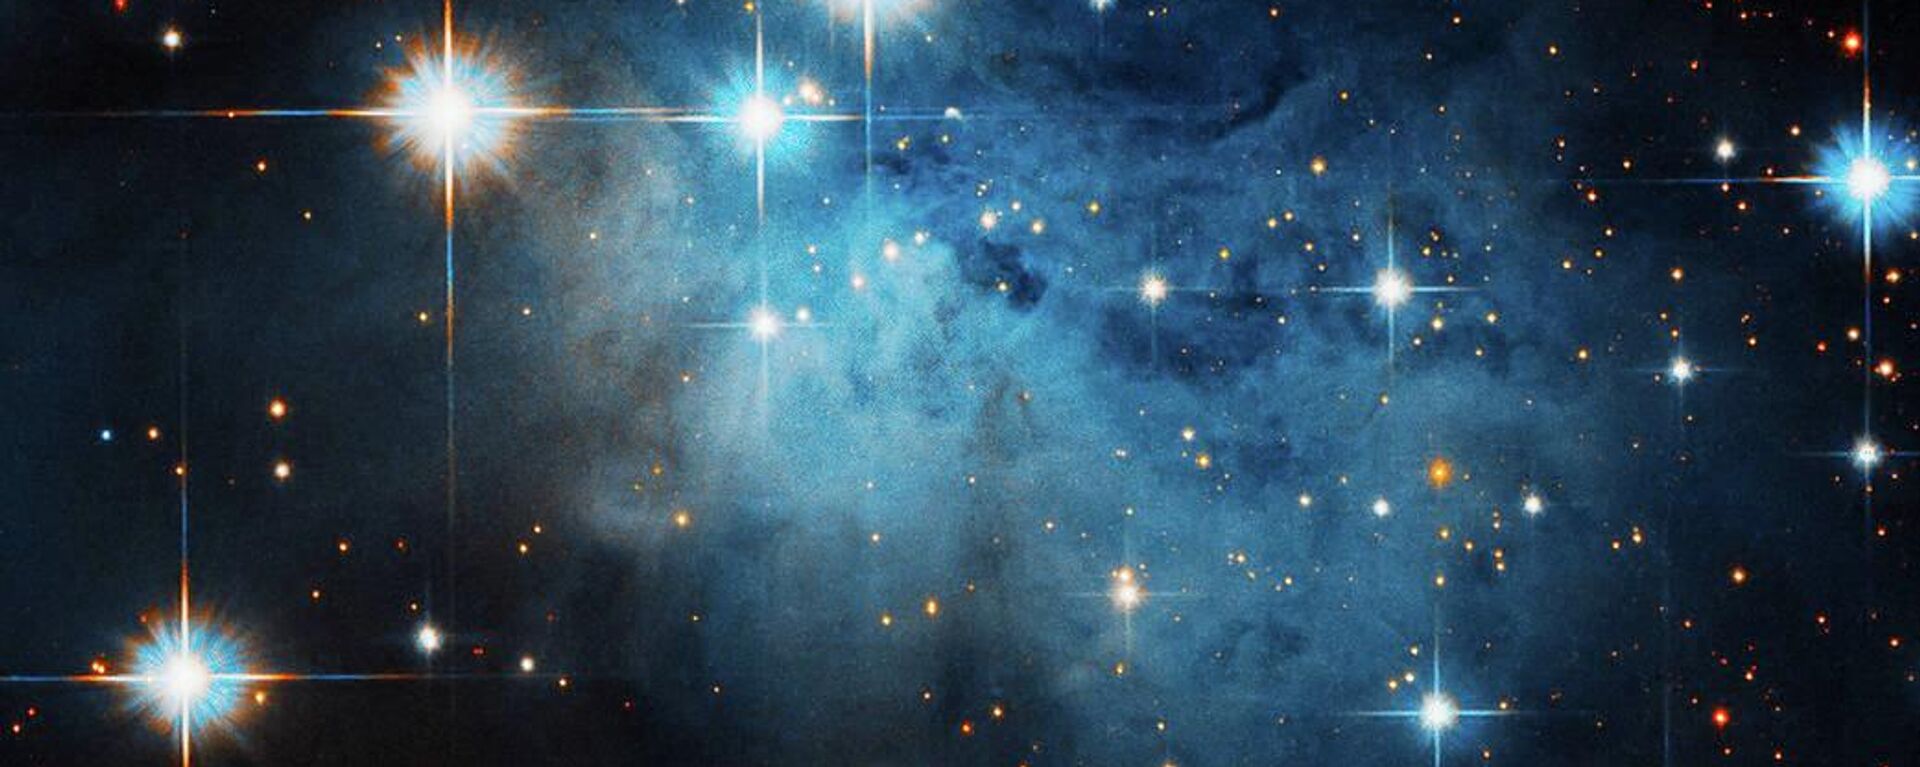 Nebulosa oscura captada por la NASA. - Sputnik Mundo, 1920, 06.04.2022